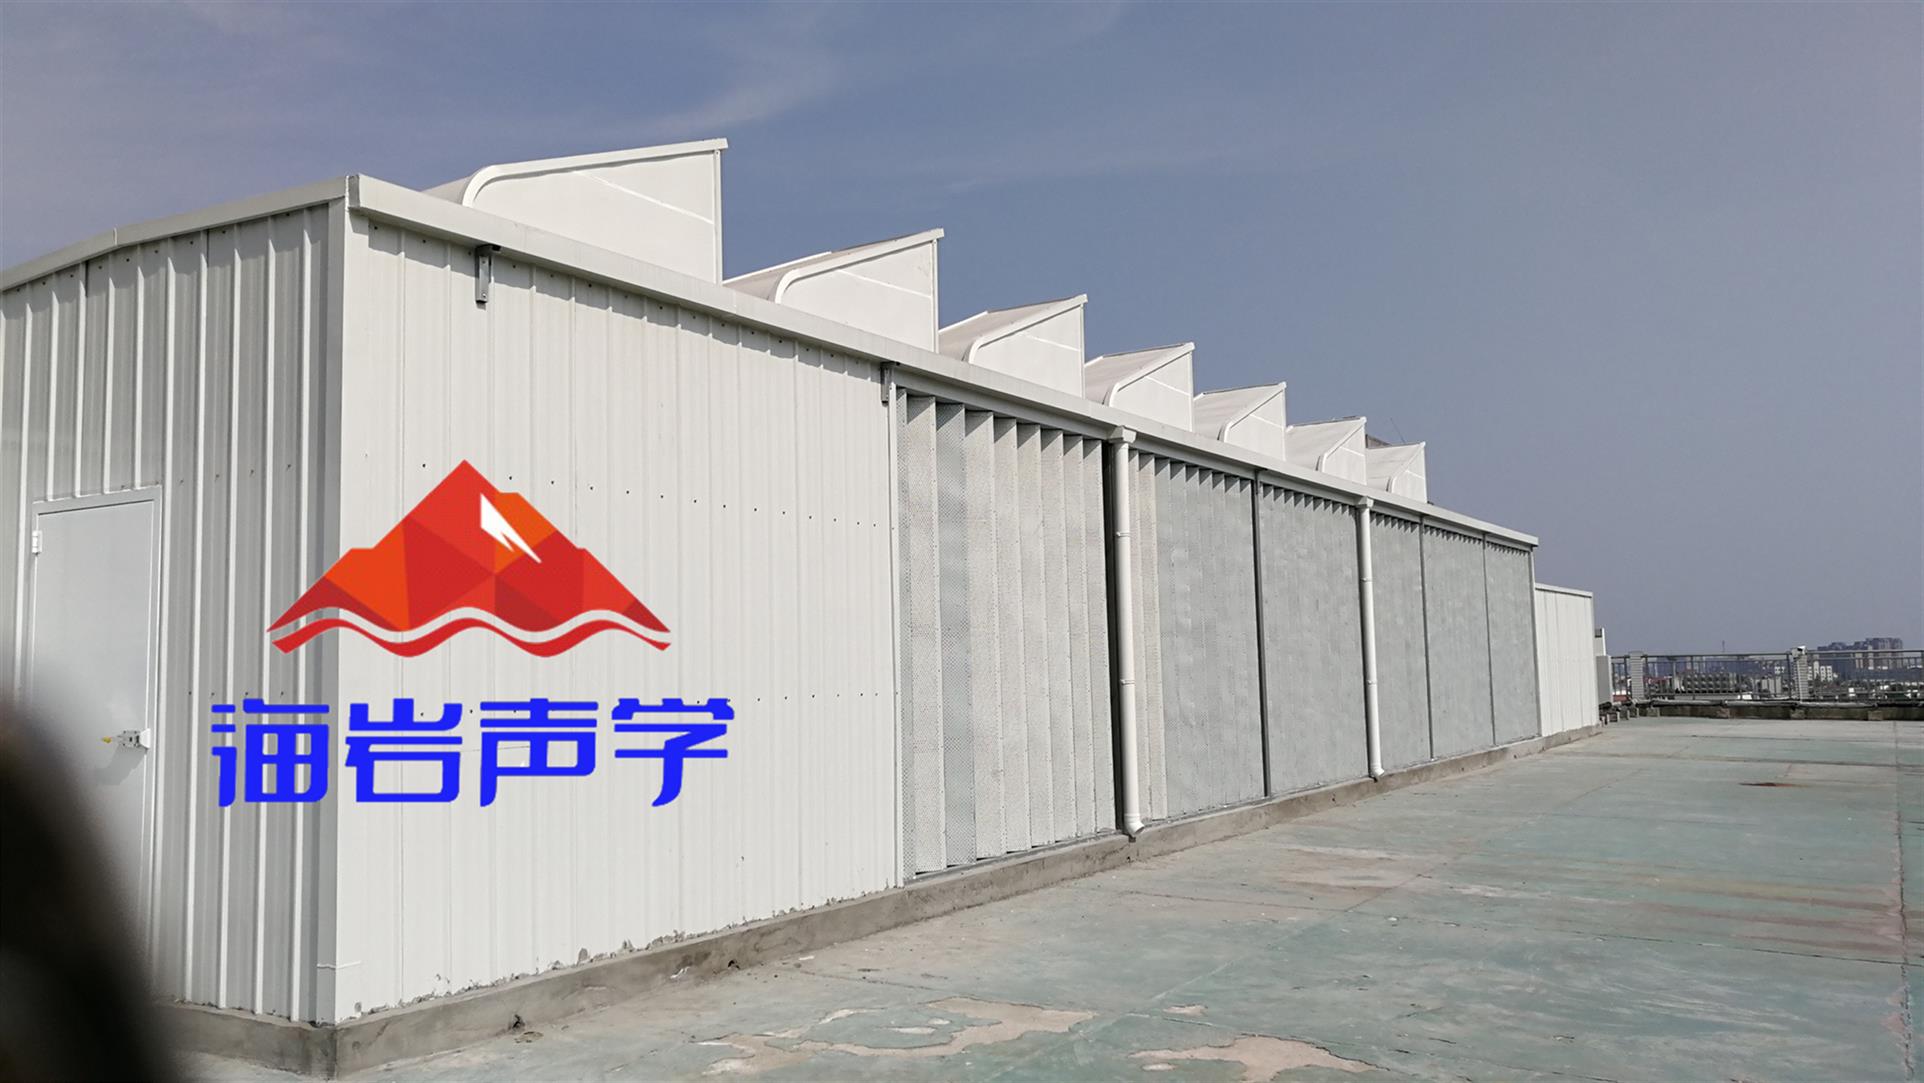 隆昌县厂房隔音降噪 四川海岩声学科技有限公司